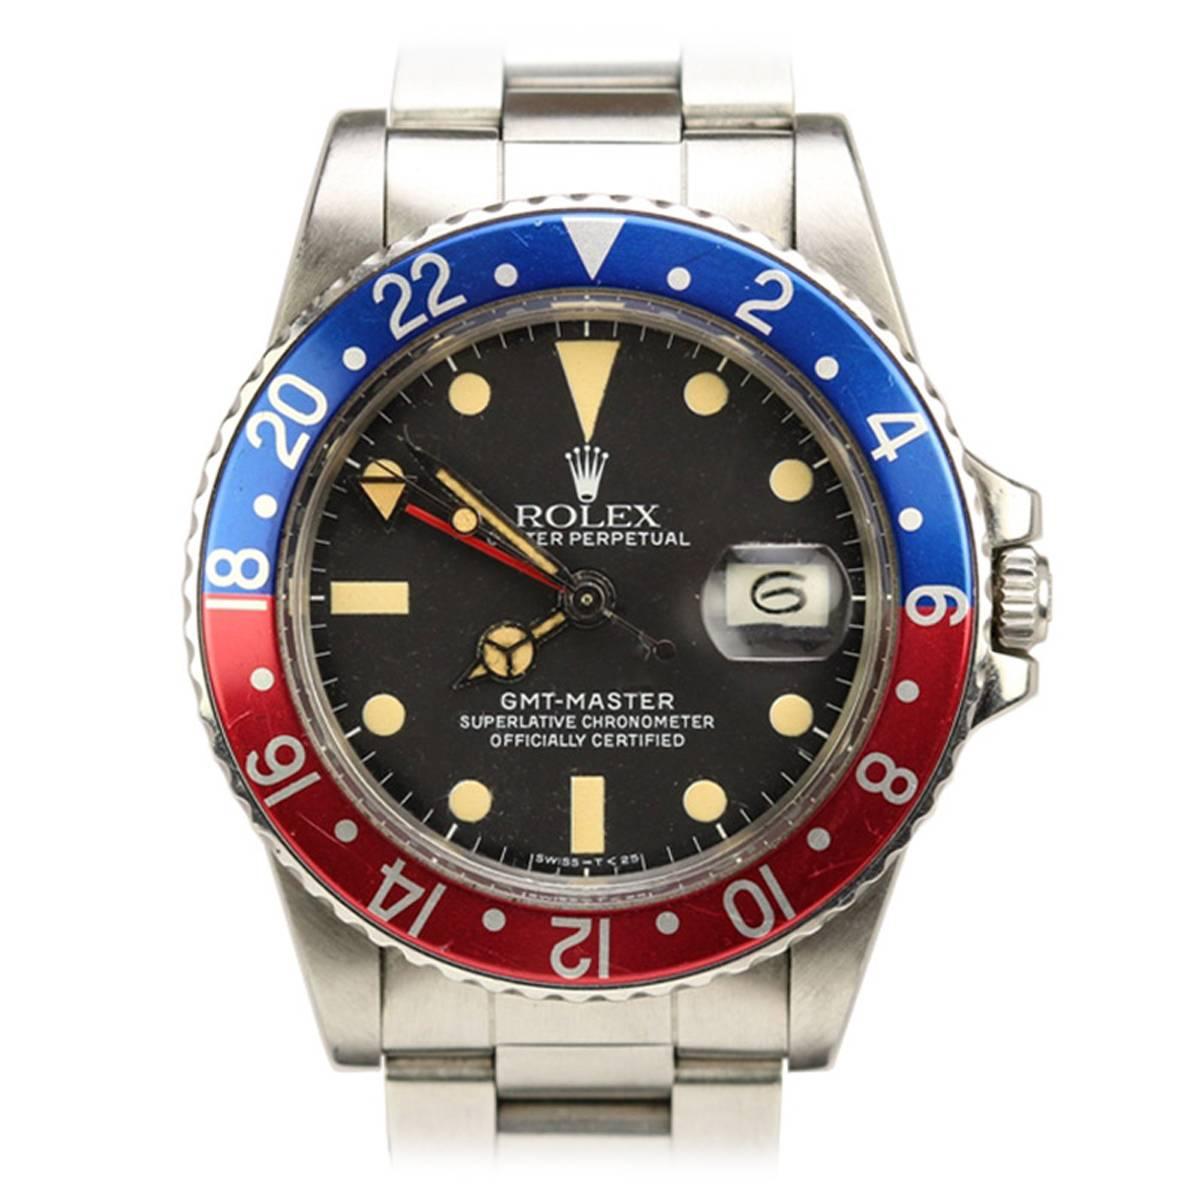 Rolex Stainless Steel GMT-Master Wristwatch Ref 16750 